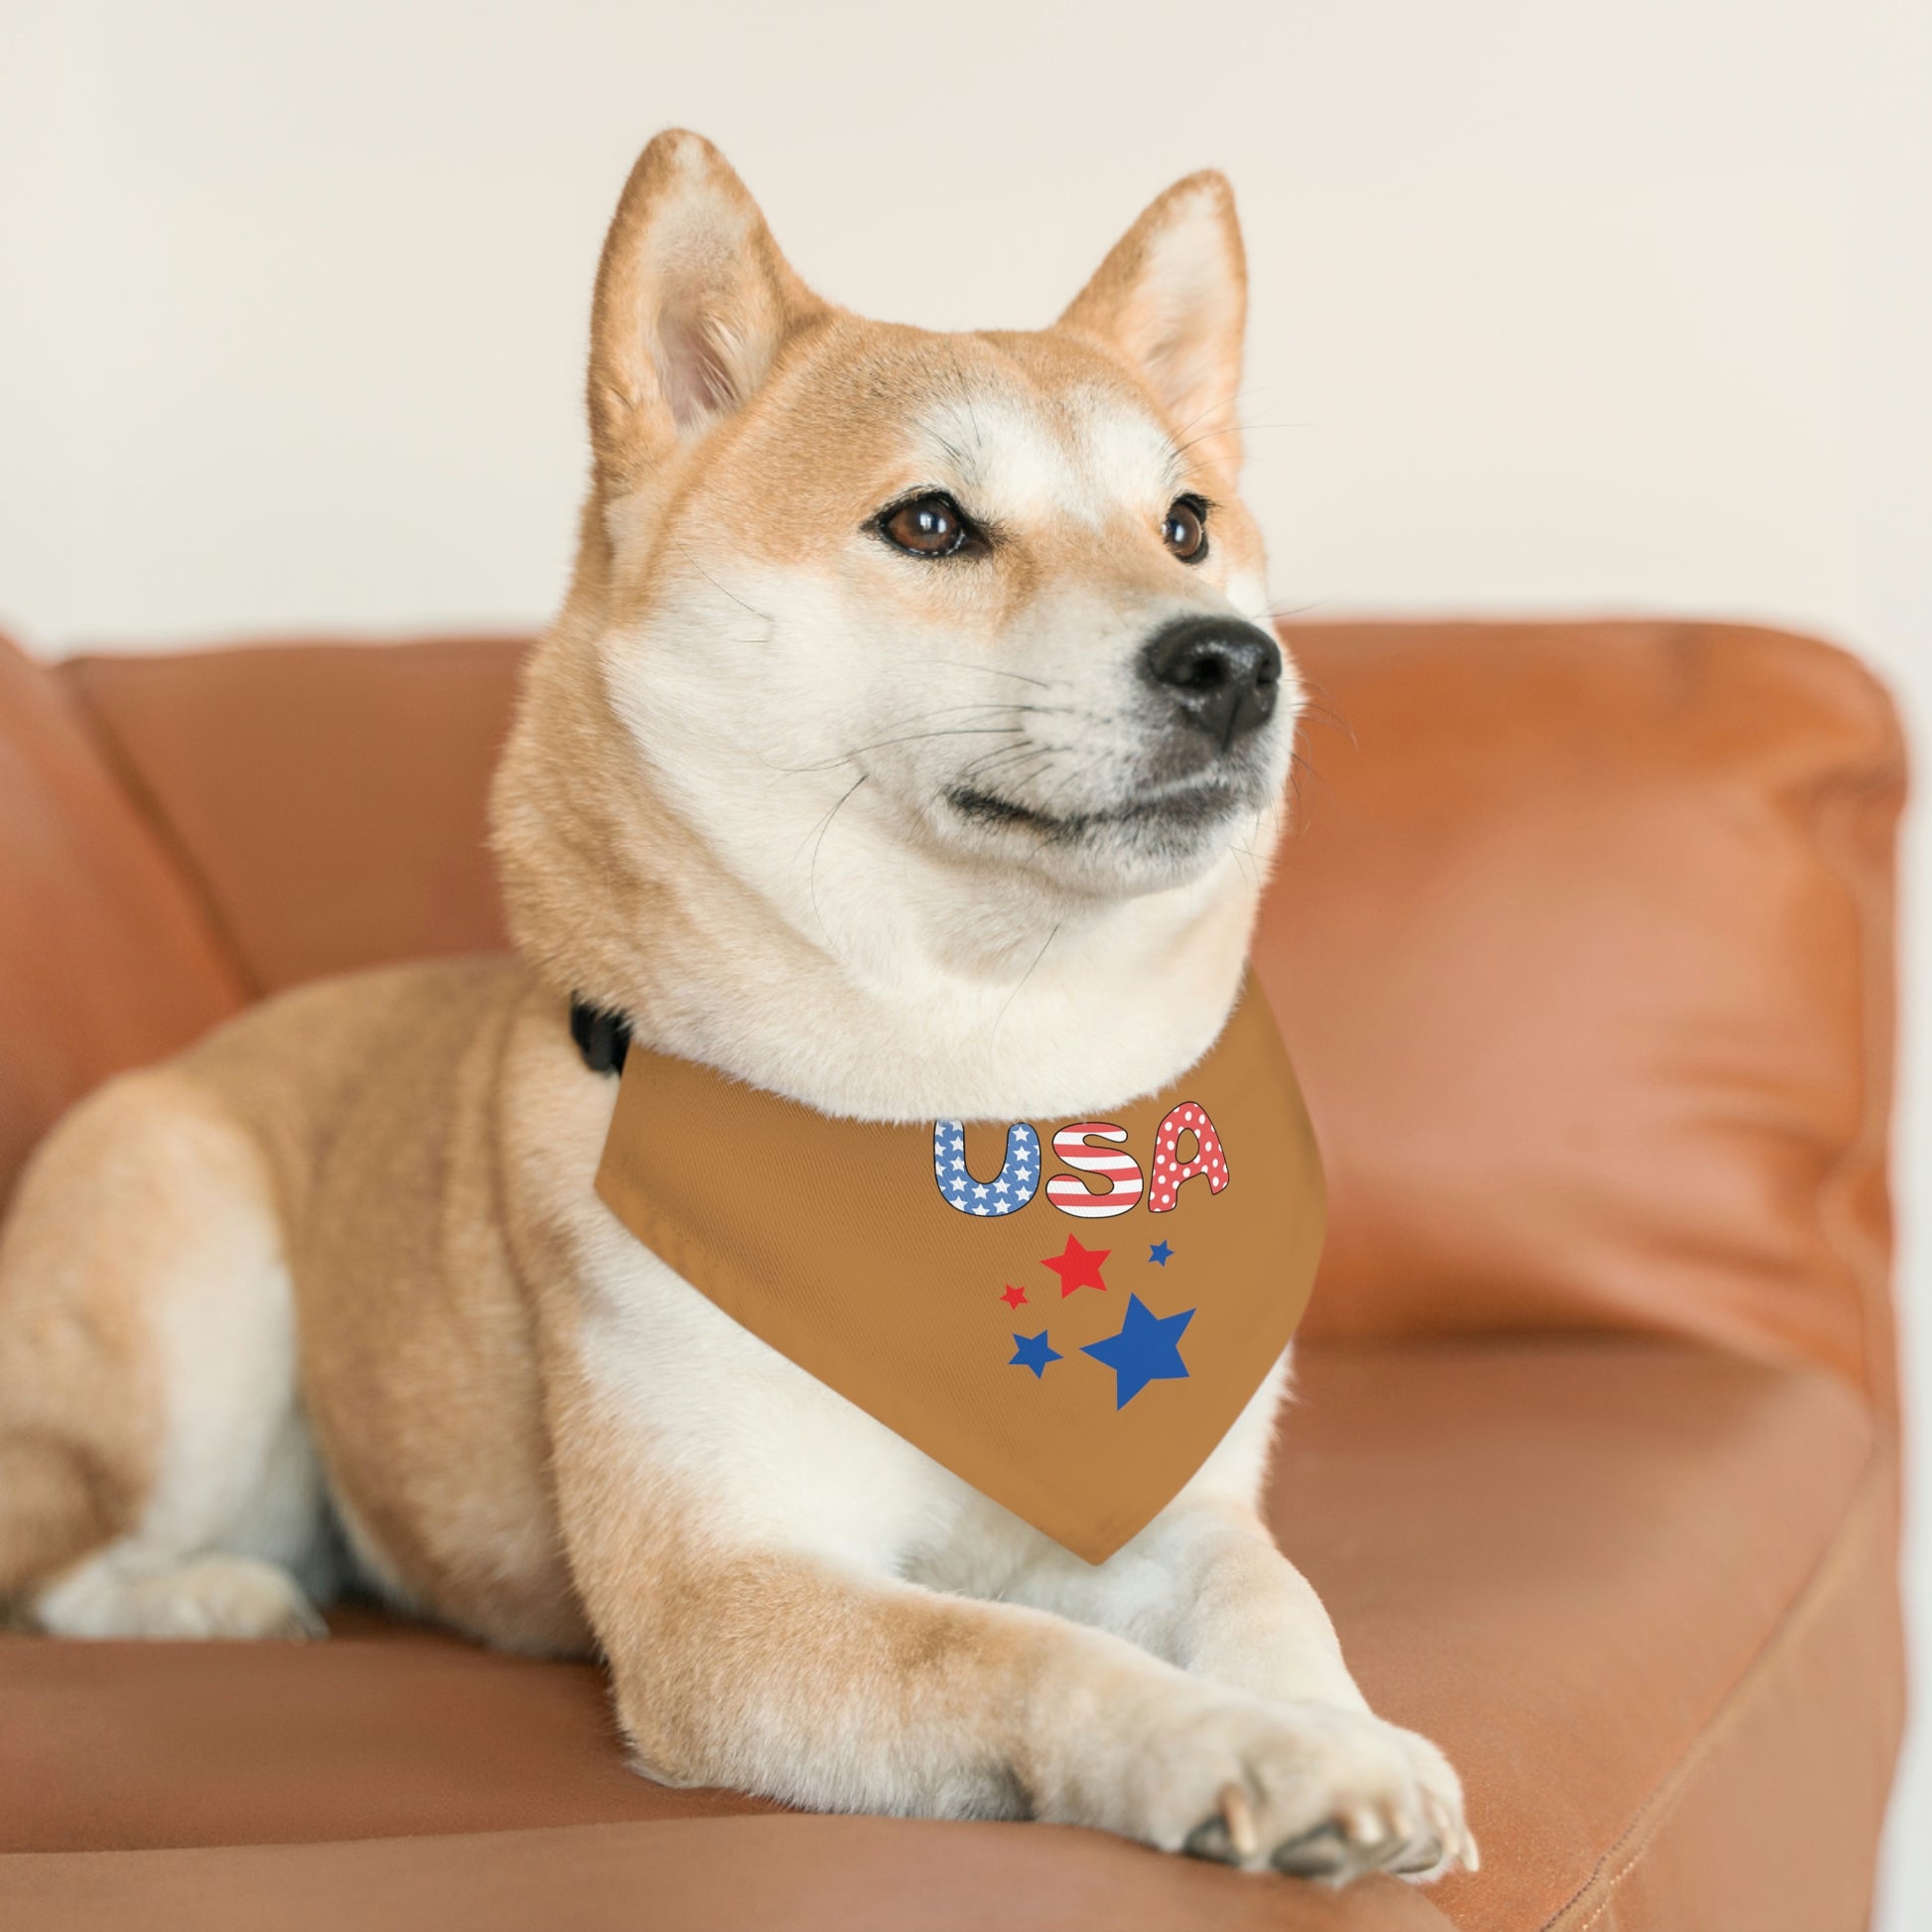 Dog on sofa wearing a collar